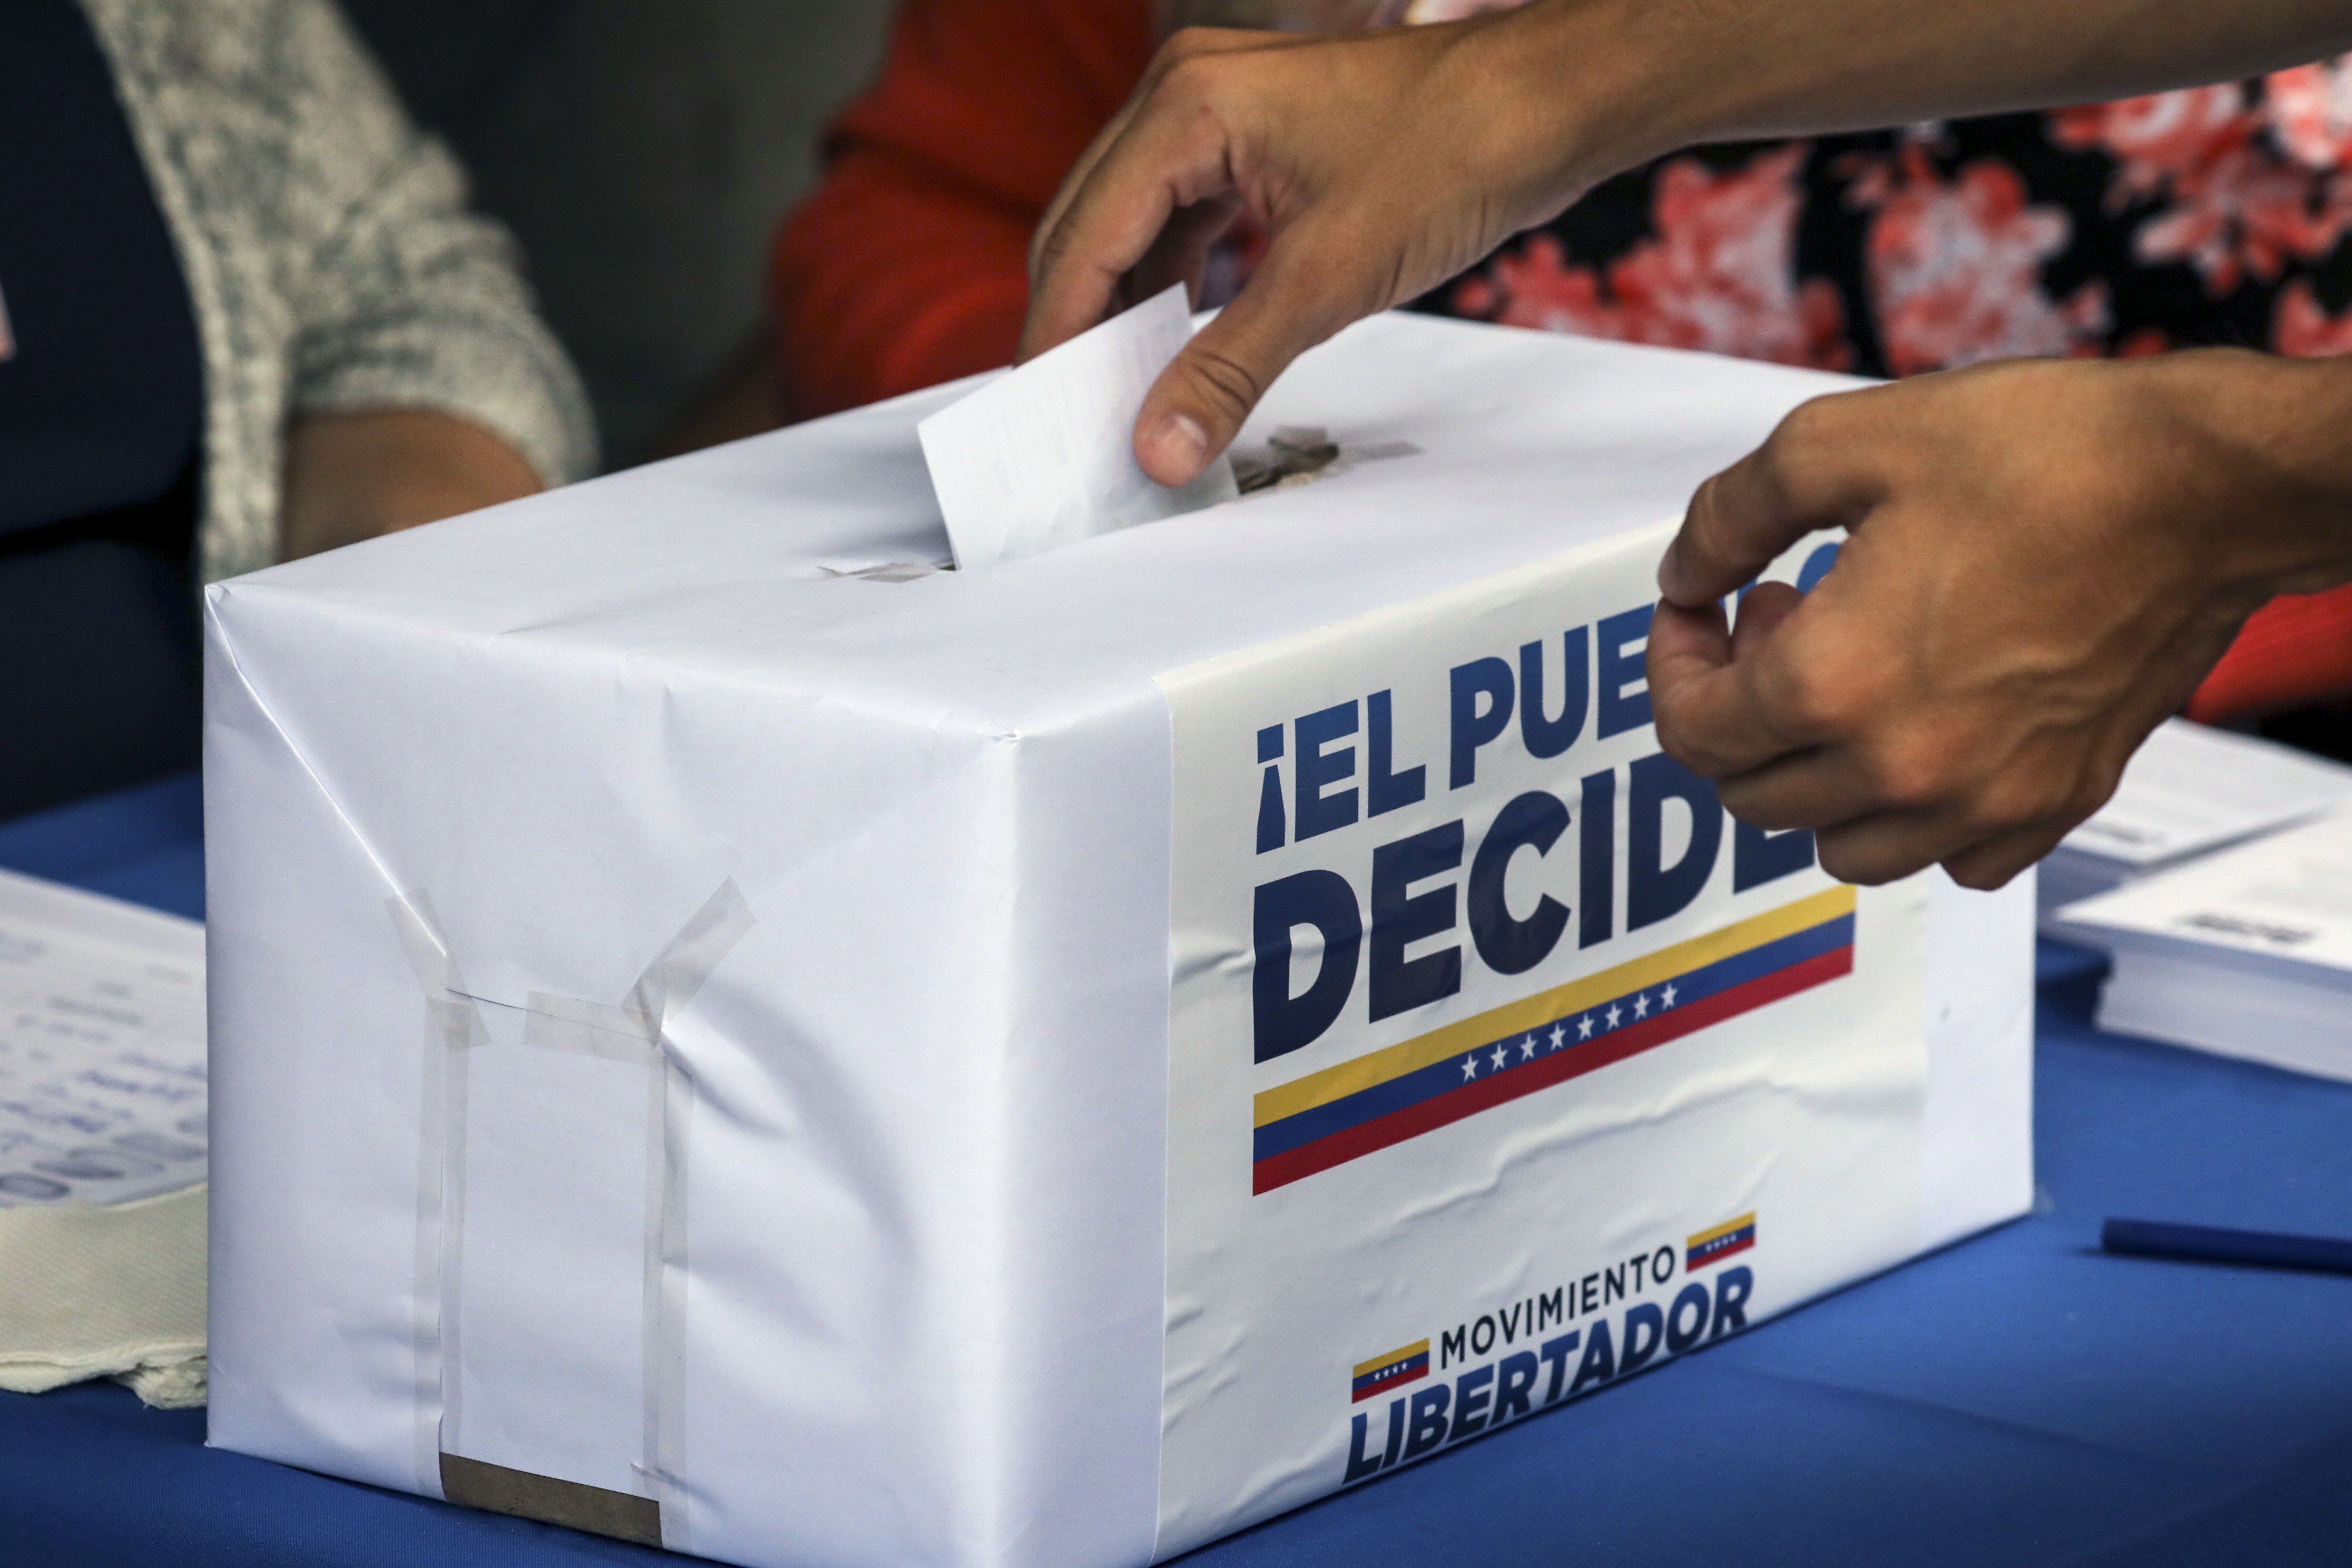 Elecciones libres: el persistente reclamo de la oposición a Maduro